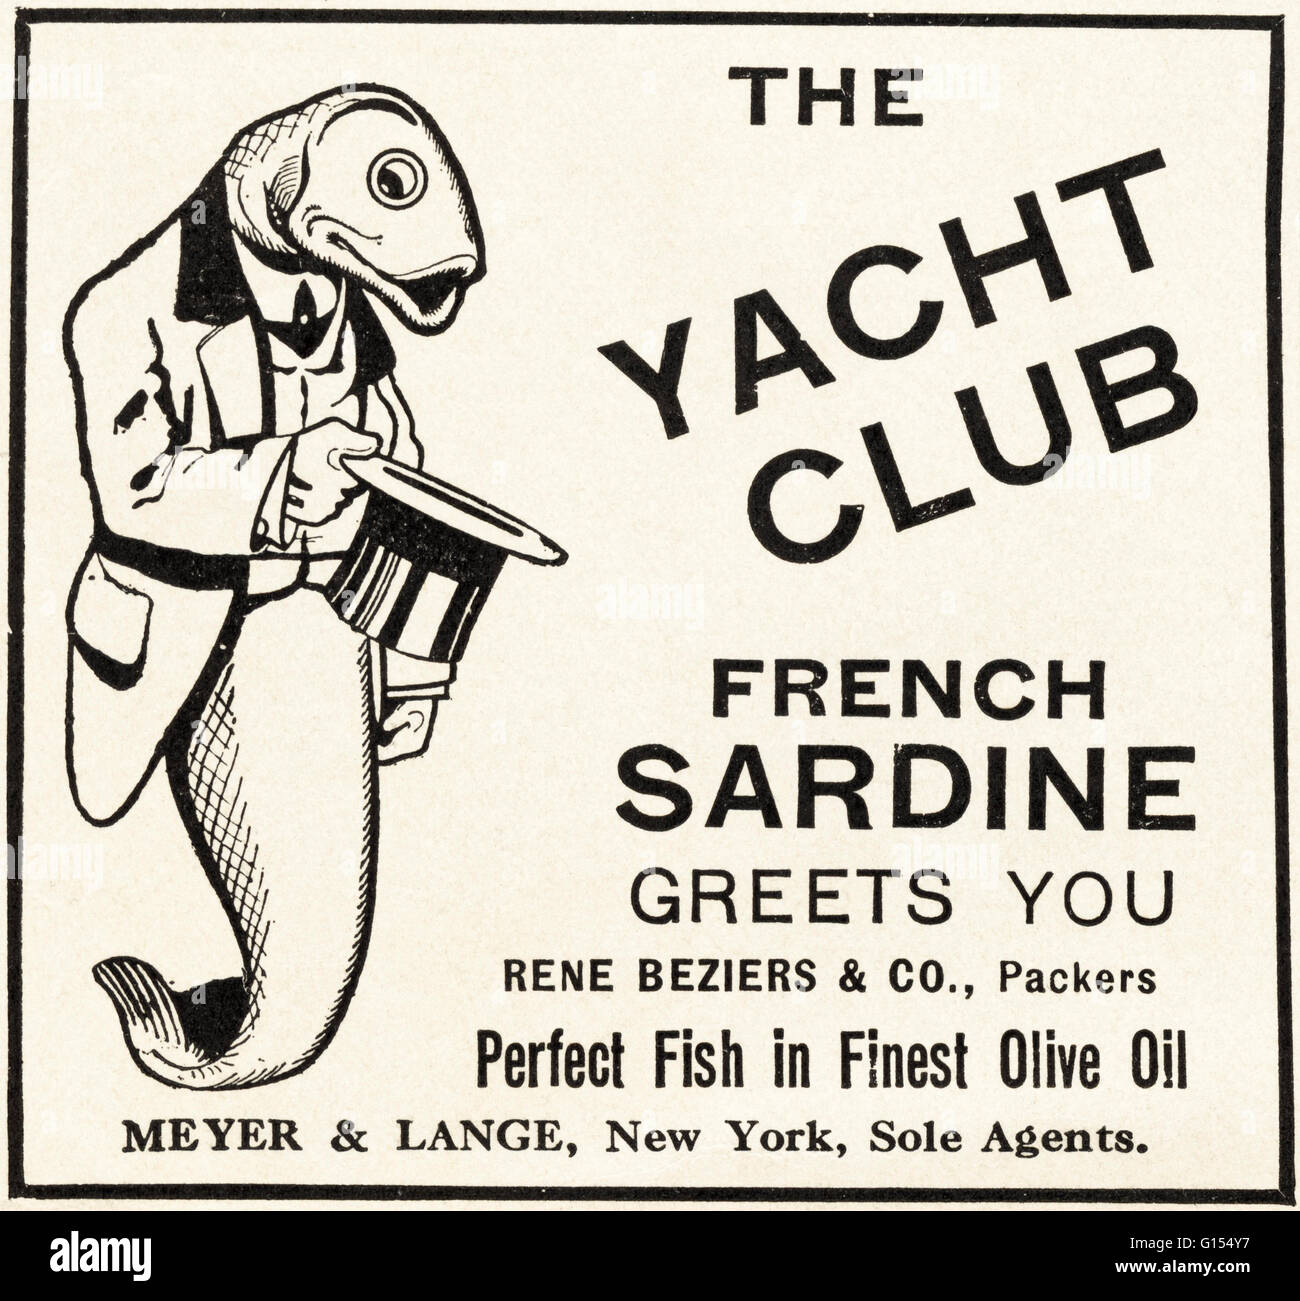 Originale vecchia vintage rivista americana un annuncio da un'epoca edoardiana datata 1910. Pubblicità Pubblicità lo Yacht Club Francese la sardina Foto Stock